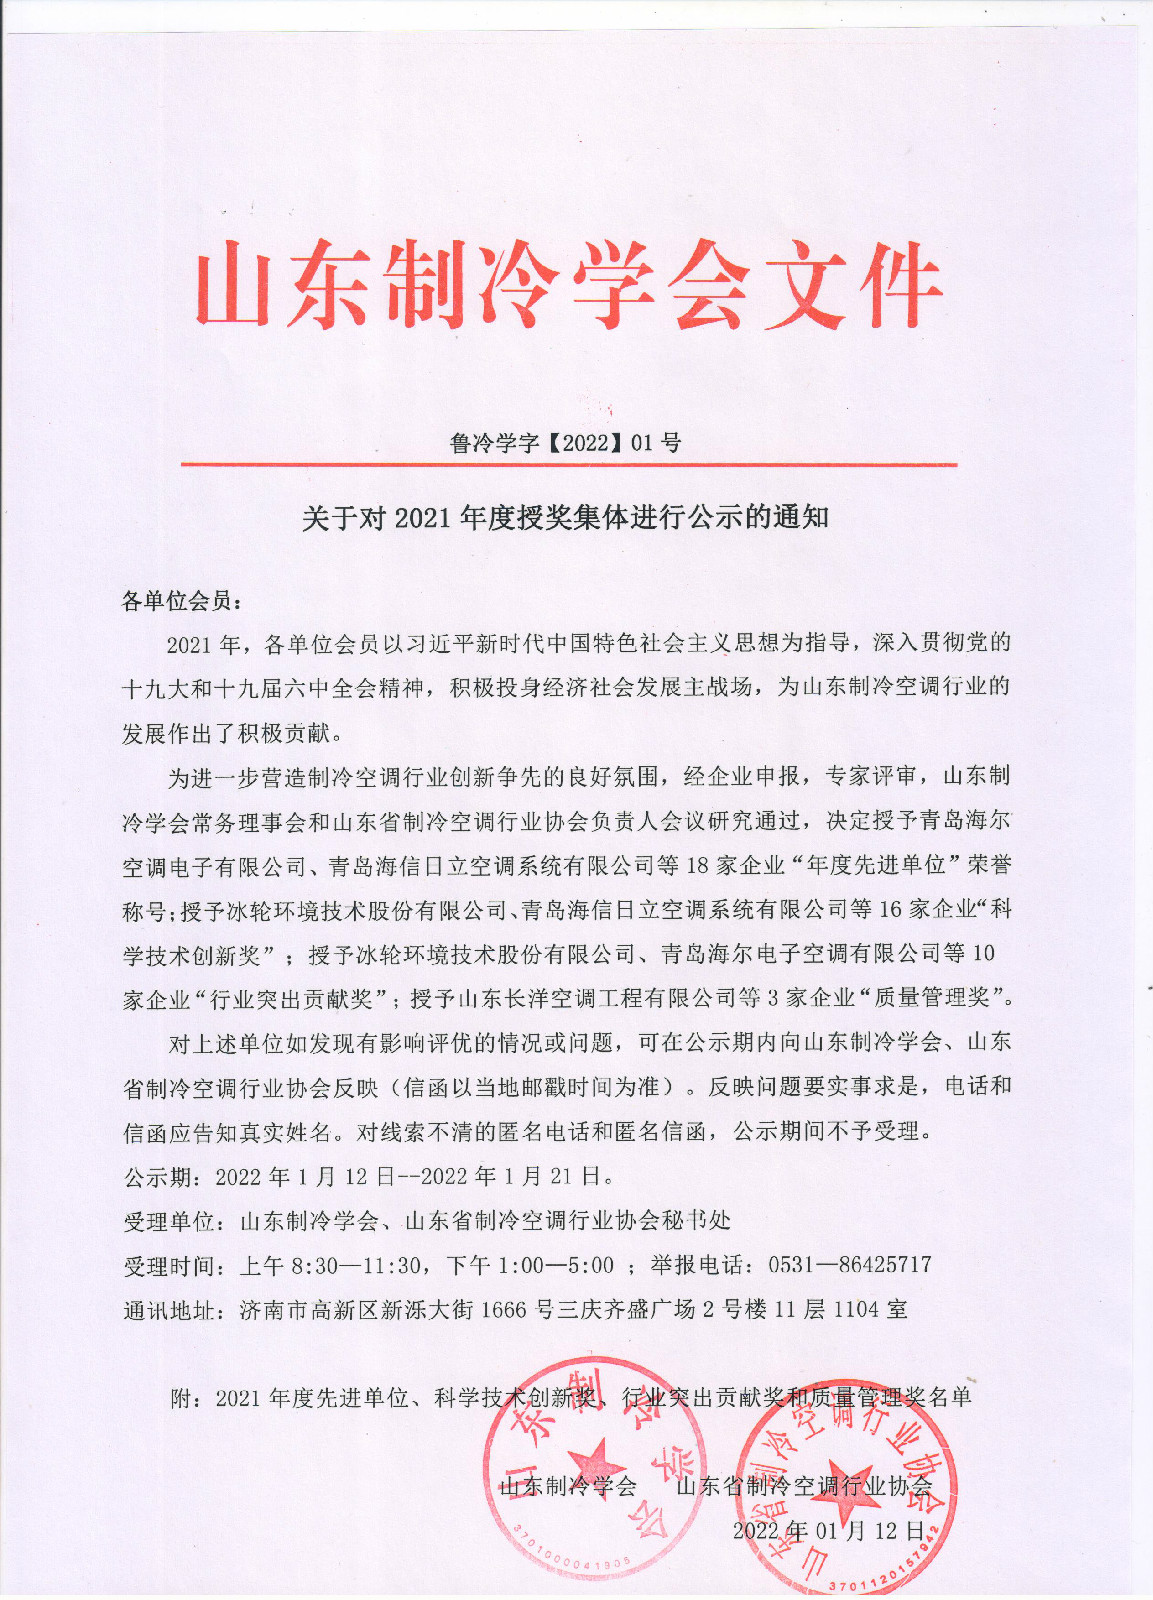 天博真人app官方(中国)有限公司对2021年度授奖集体进行公示的通知 001.jpg